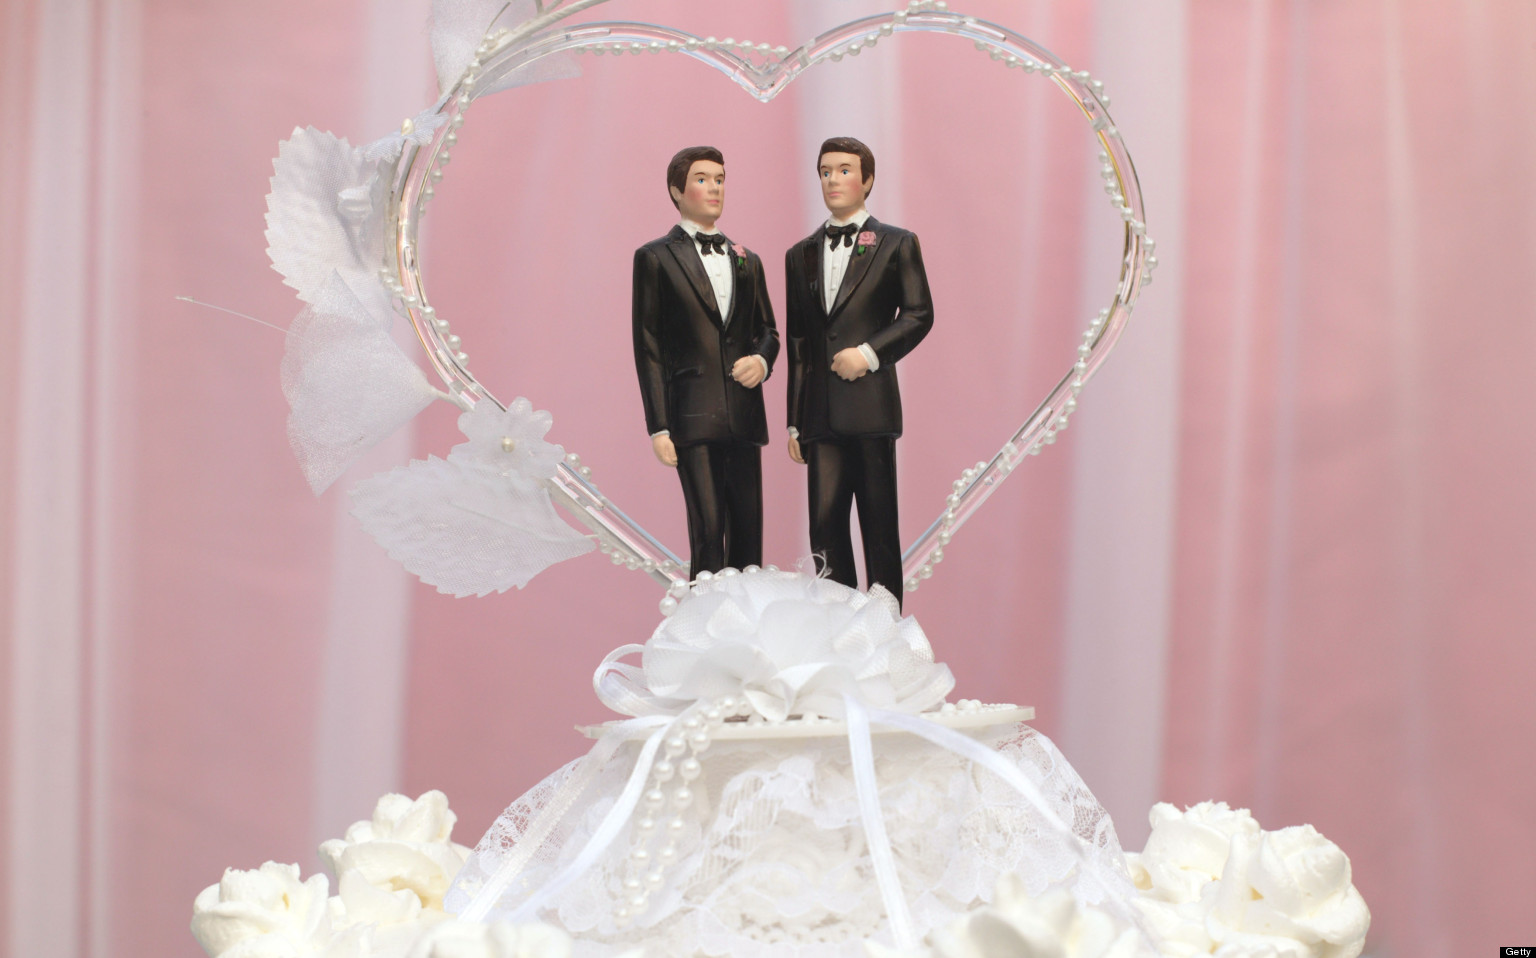 ADL gay wedding cake, masterpiece cake shop scotus, SCOTUS gay wedding